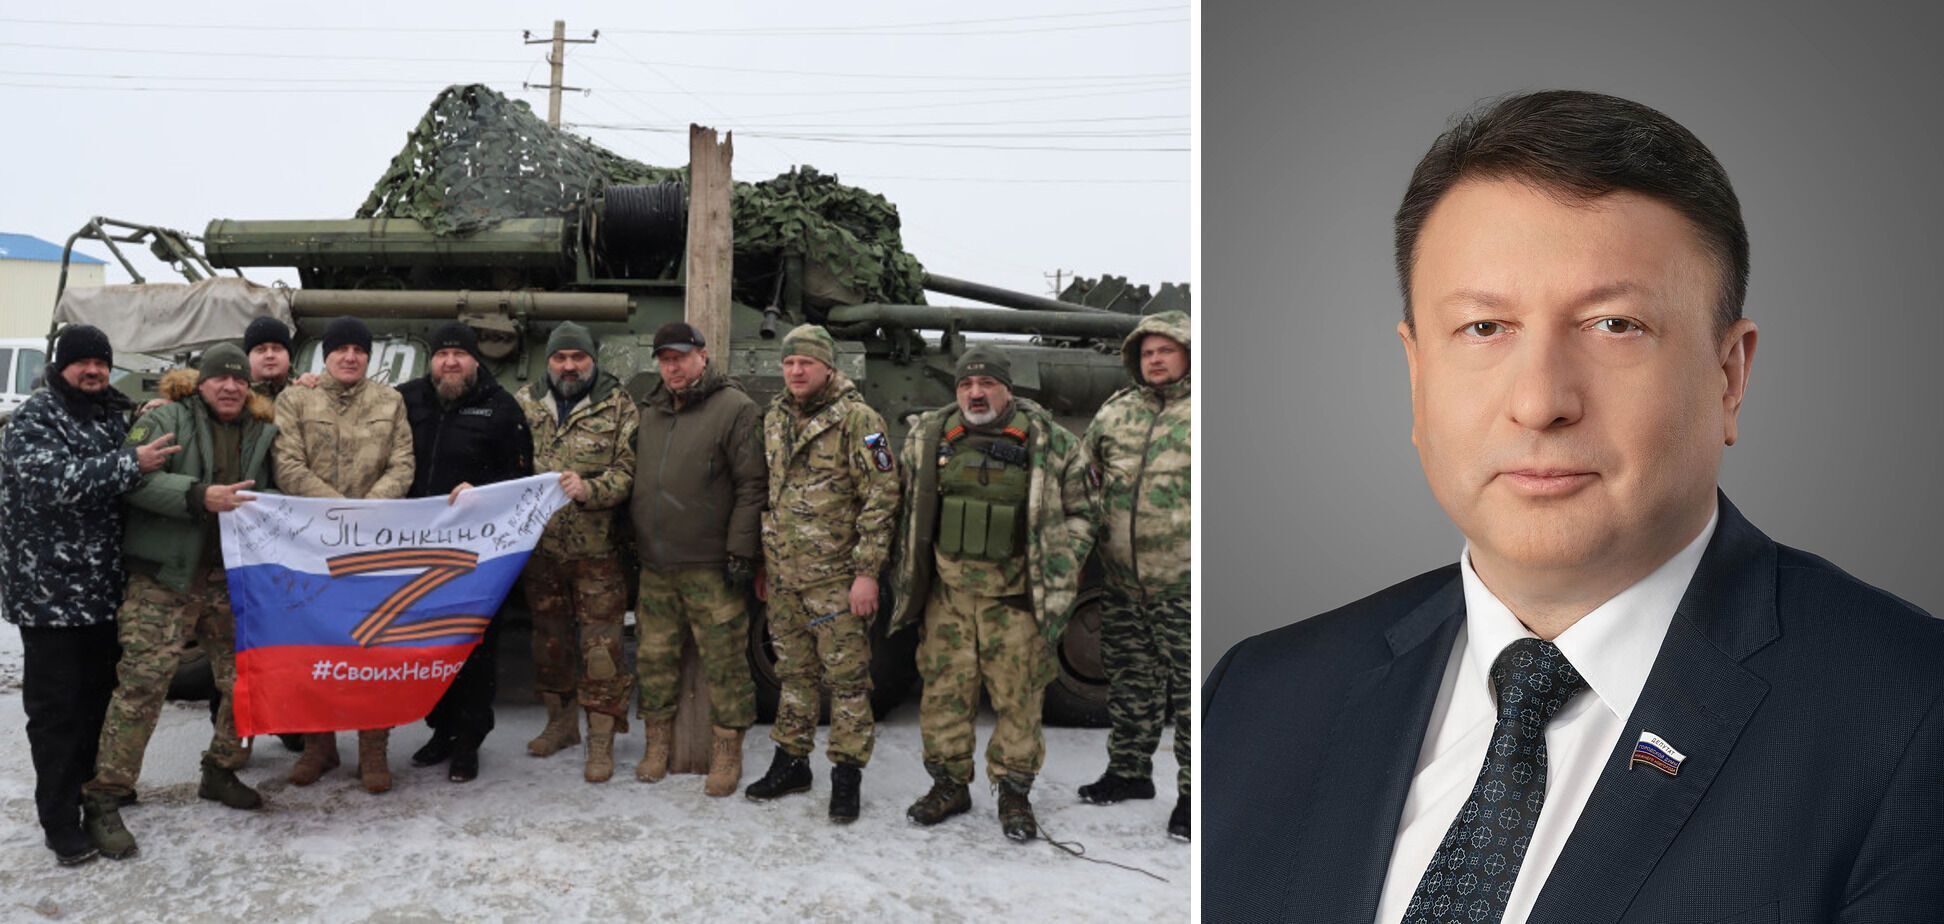 "Фото з Путіним, Шойгу та зброєю": як українці боротимуться за ОІ при допуску РФ і чому росіяни можуть відмовитися самі